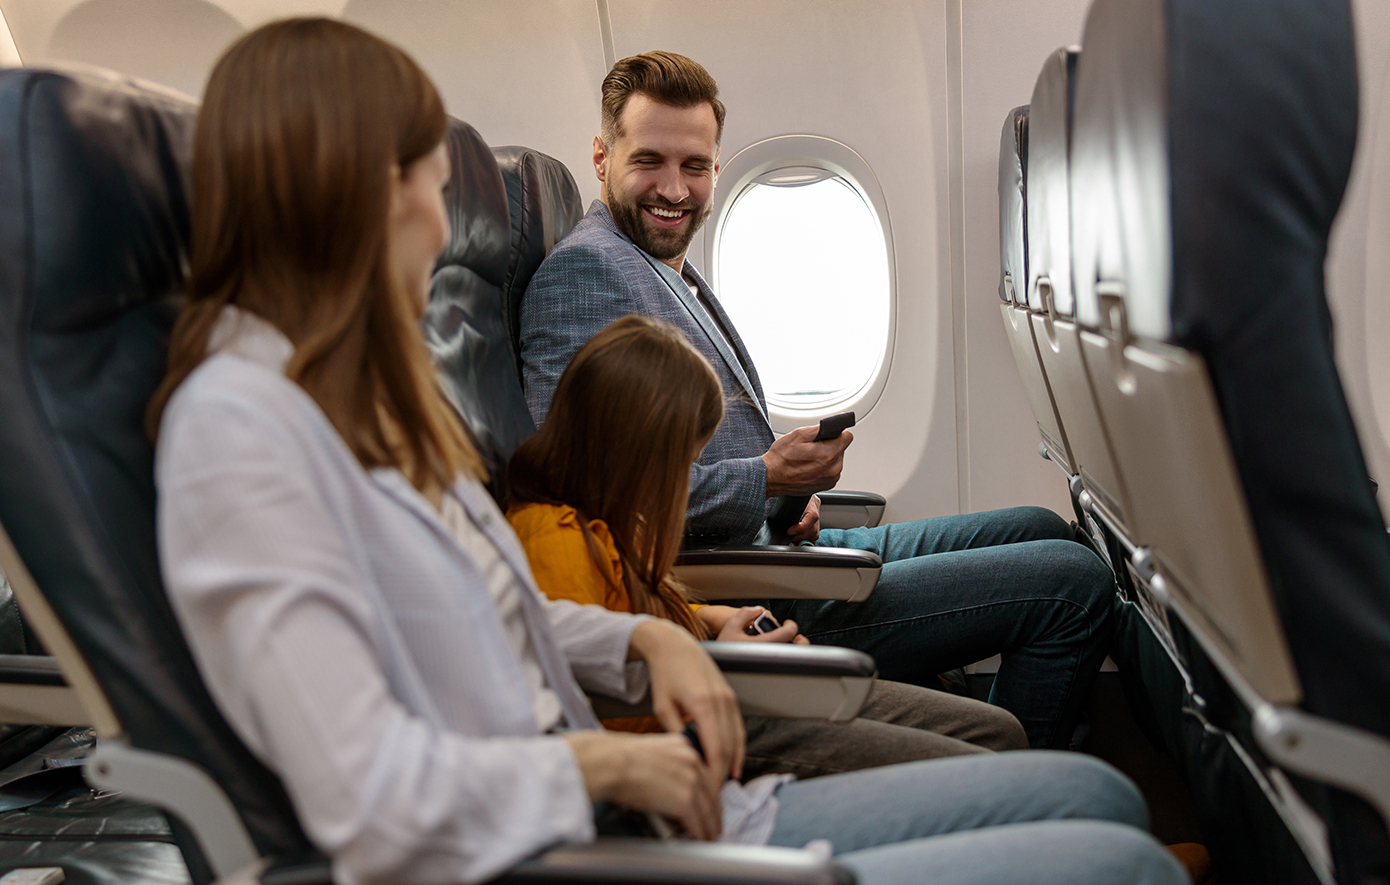 Αυτές οι θέσεις στο αεροπλάνο είναι οι καλύτερες αν ταξιδεύετε με παιδιά